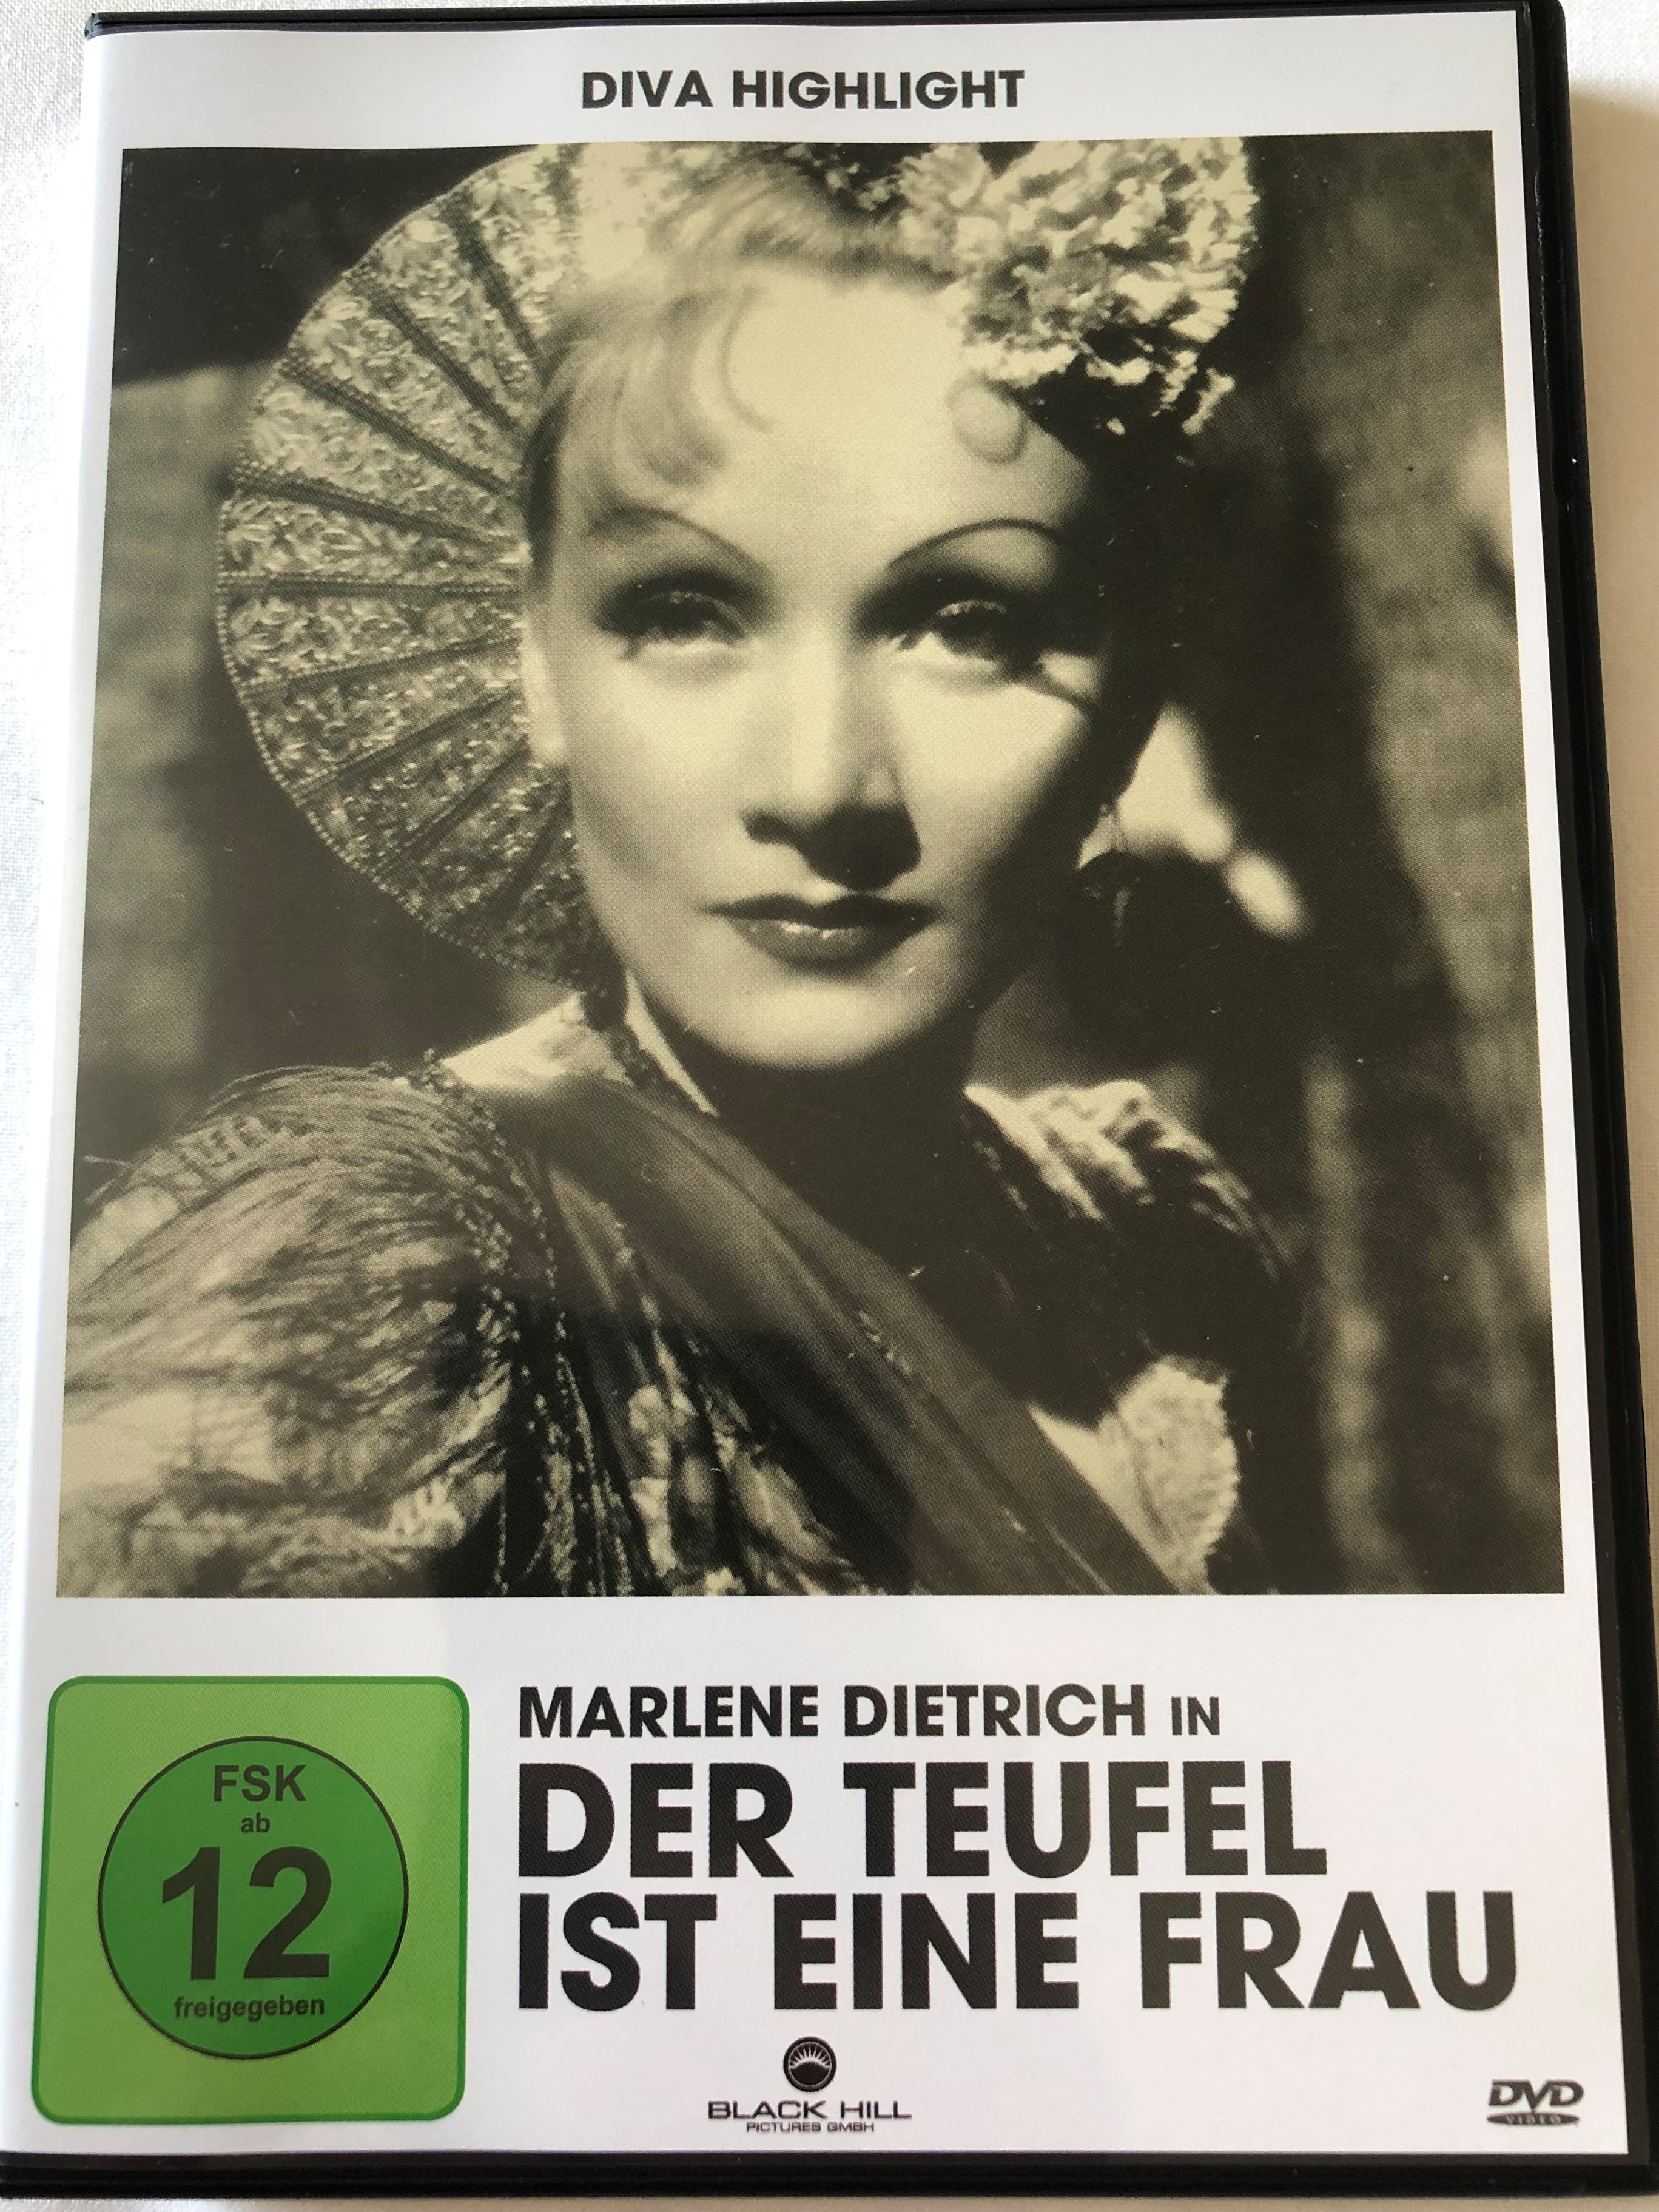 der-teufel-ist-eine-frau-dvd-1935-the-devil-is-a-woman-directed-by-josef-von-sternberg-starring-marlene-dietrich-lionel-atwill-cesar-romero-diva-highlight-1-.jpg